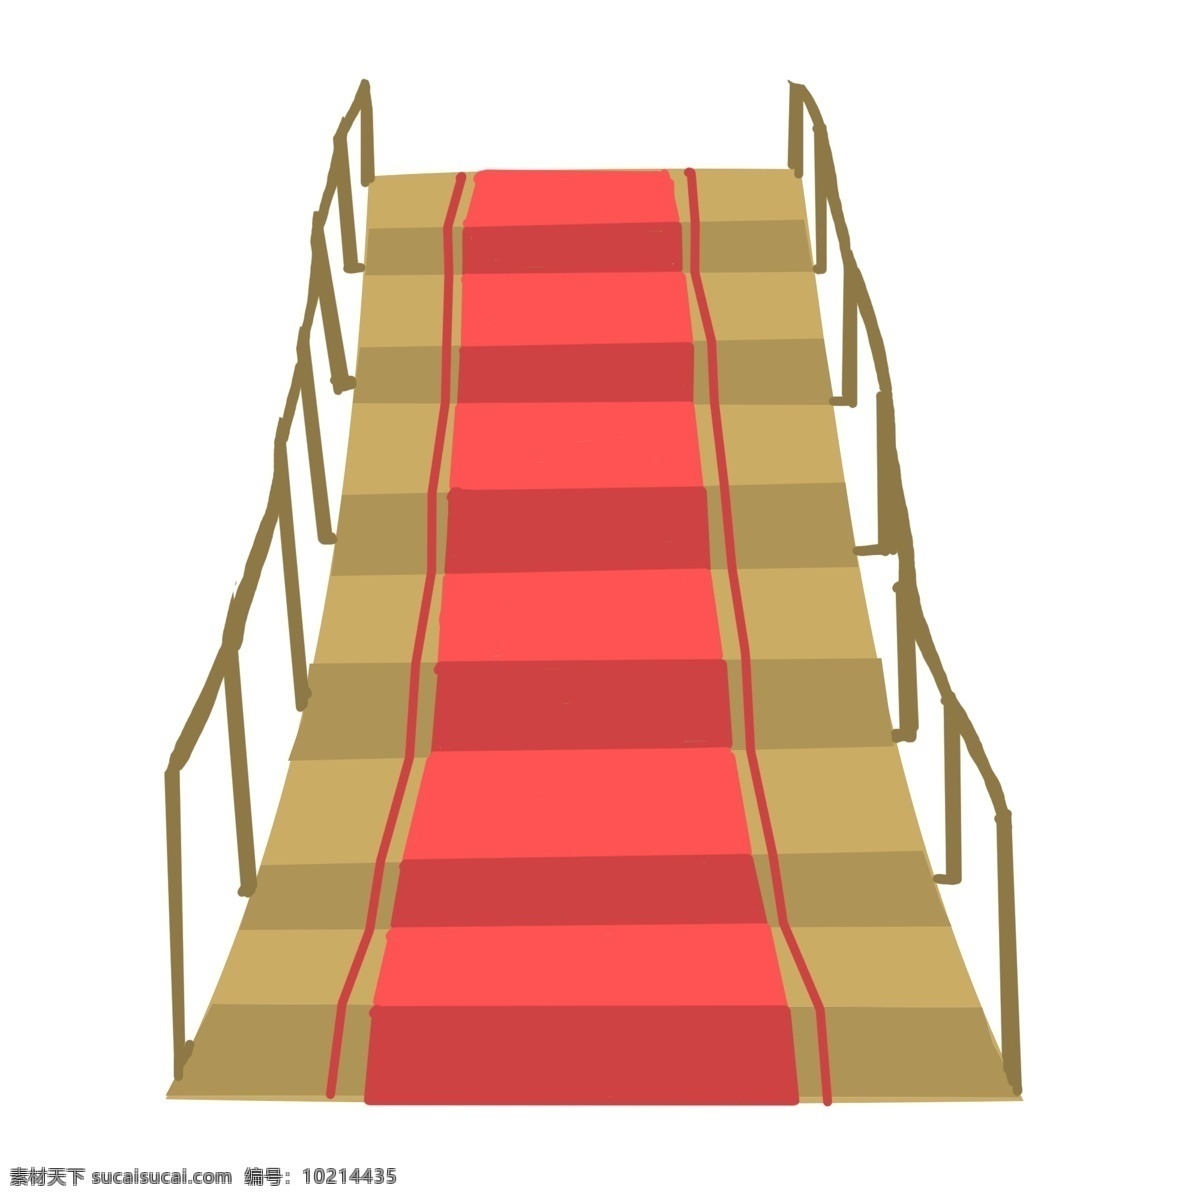 棕色 长长 楼梯 插图 红色地毯 棕色楼梯 漂亮的楼梯 卡通设计 棕色扶手 卡通插图 向上的楼梯